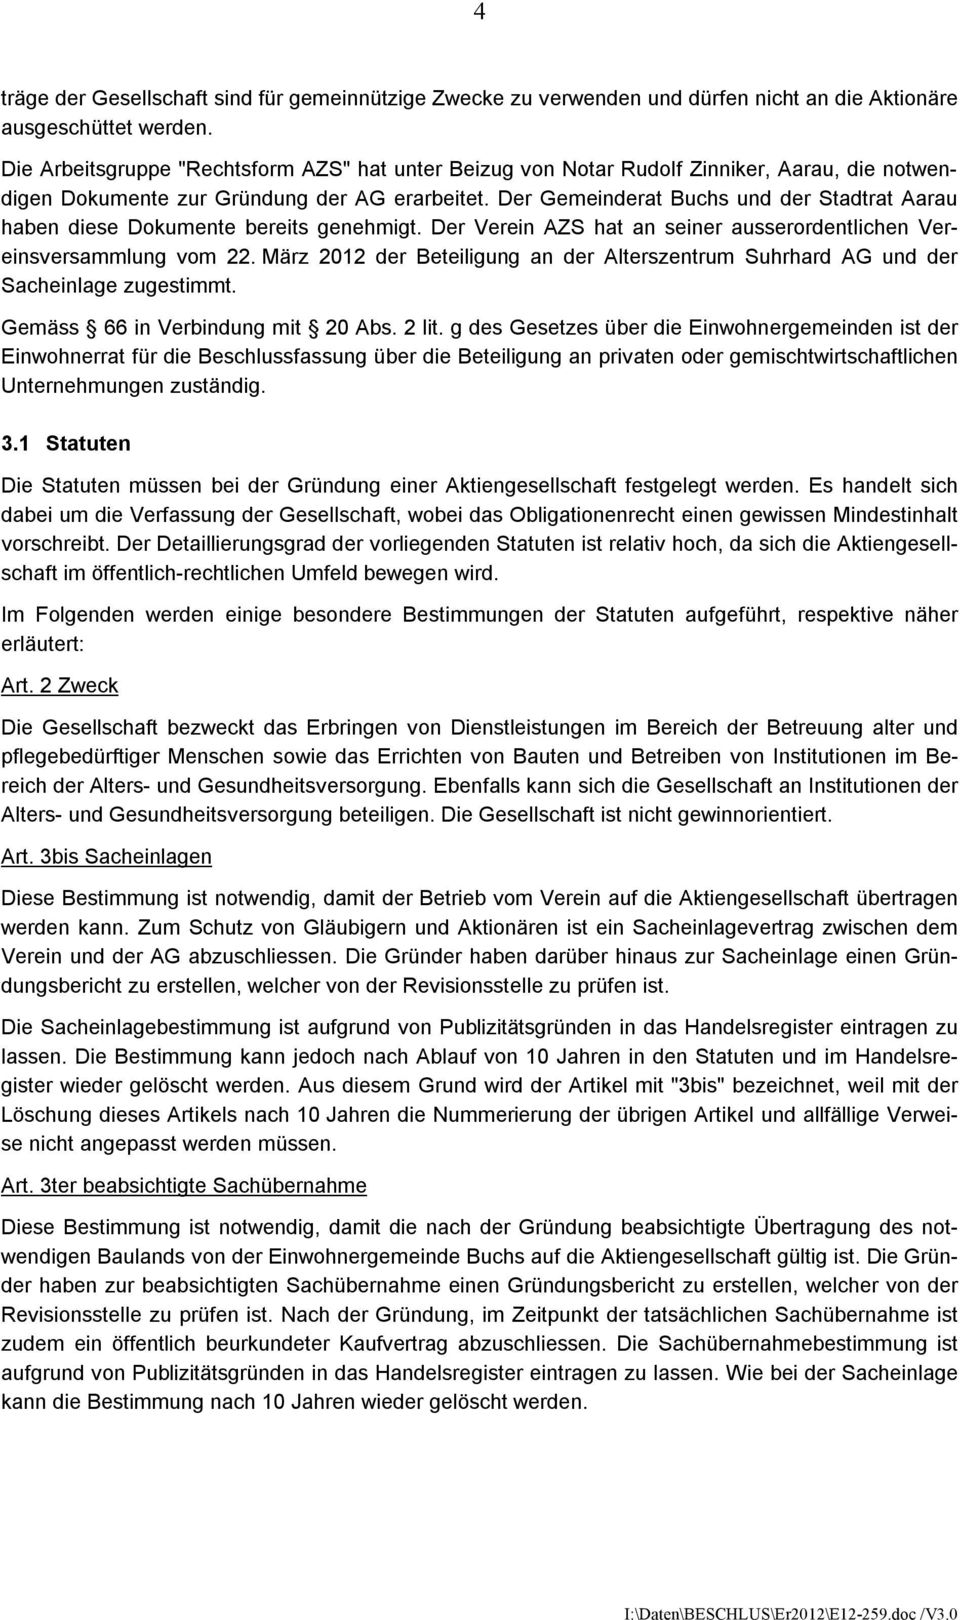 Der Gemeinderat Buchs und der Stadtrat Aarau haben diese Dokumente bereits genehmigt. Der Verein AZS hat an seiner ausserordentlichen Vereinsversammlung vom 22.